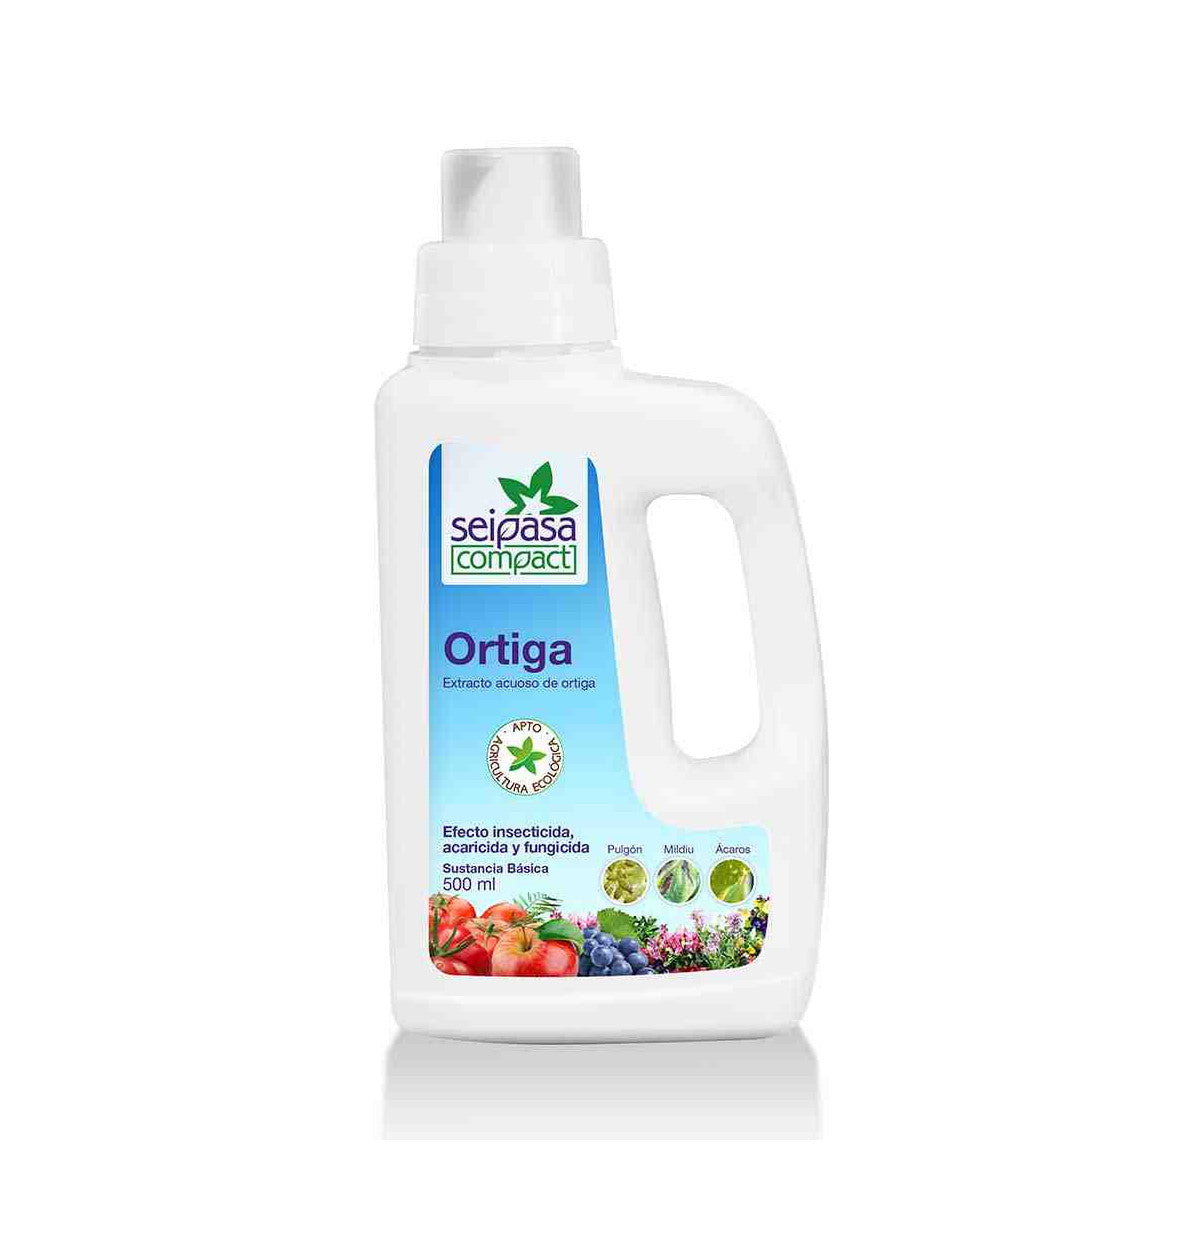 Ortiga - Insecticida, acaricida y fungicida